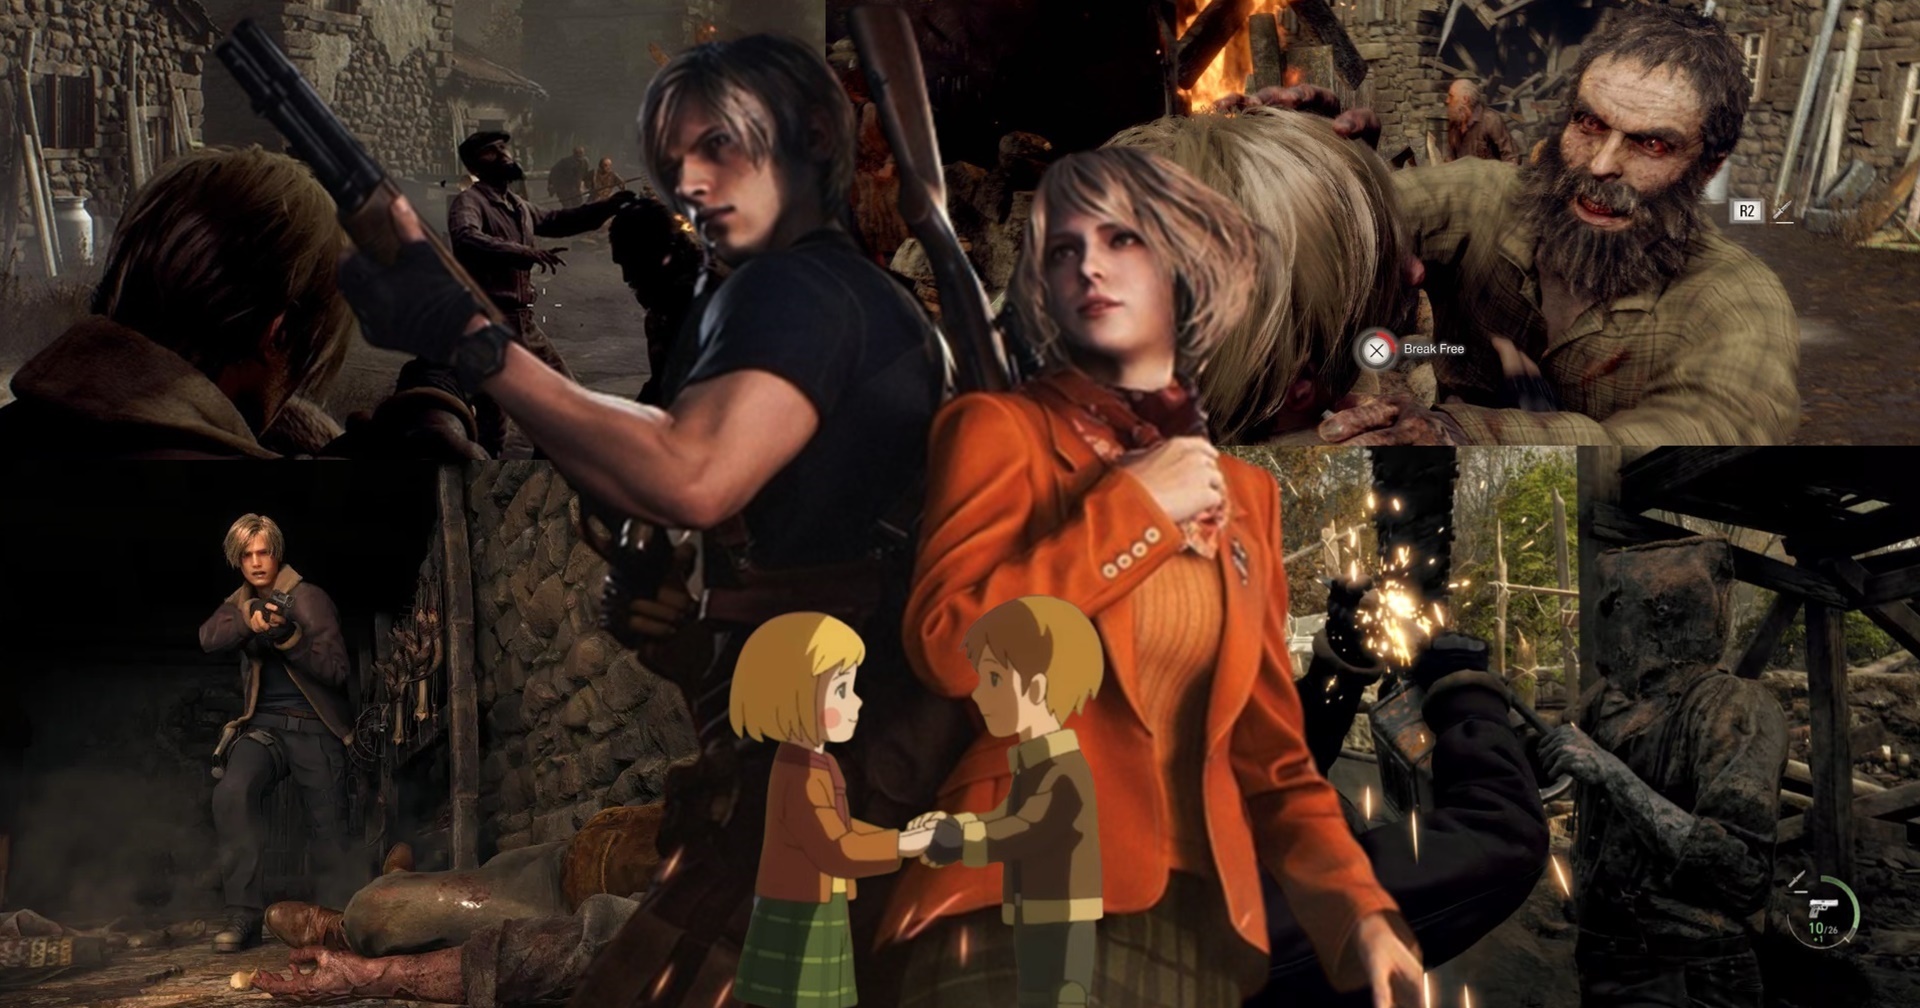 มือใหม่หัดเล่นรวมวิธีเอาชีวิตรอดสิ่งที่ควรรู้ในเกม Resident Evil 4 Remake ที่คุณควรรู้